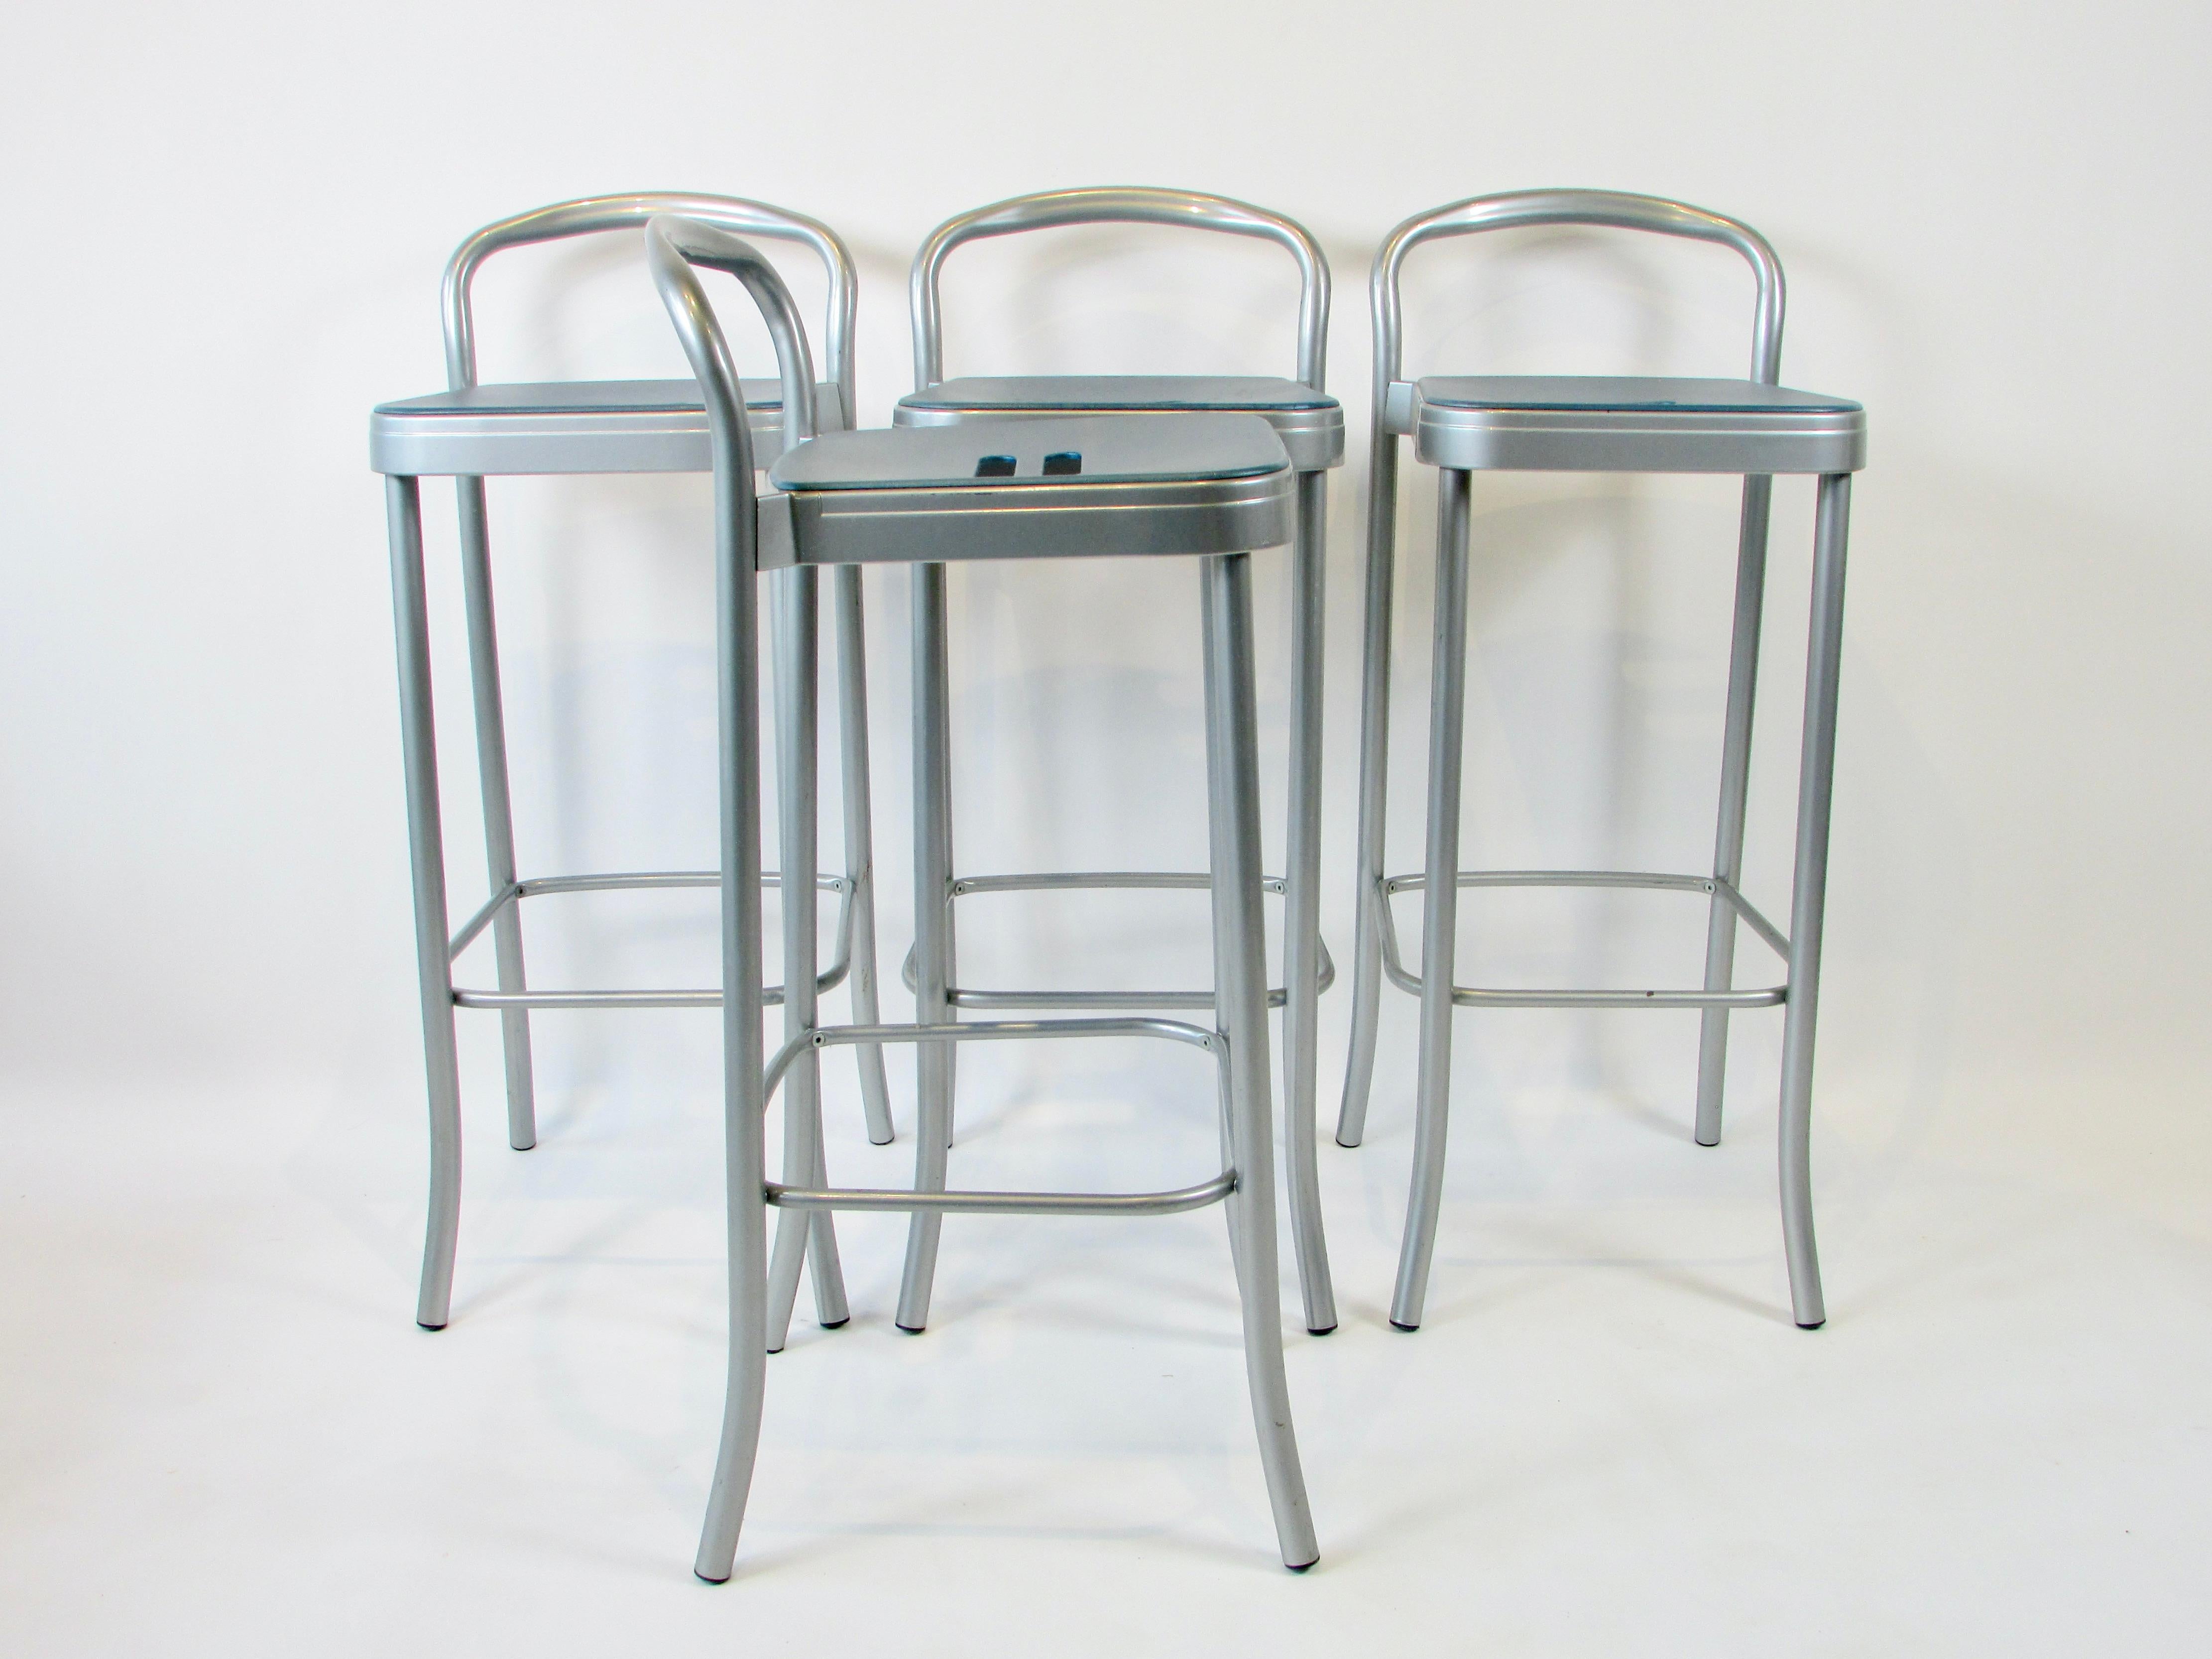 Vier Barhocker, entworfen vom italienischen Meister Vico Magistretti für Kartell. Leichte Aluminiumrahmen sind pulverbeschichtet und stützen Kunststoffsitze mit Grifflöchern in der Mitte.